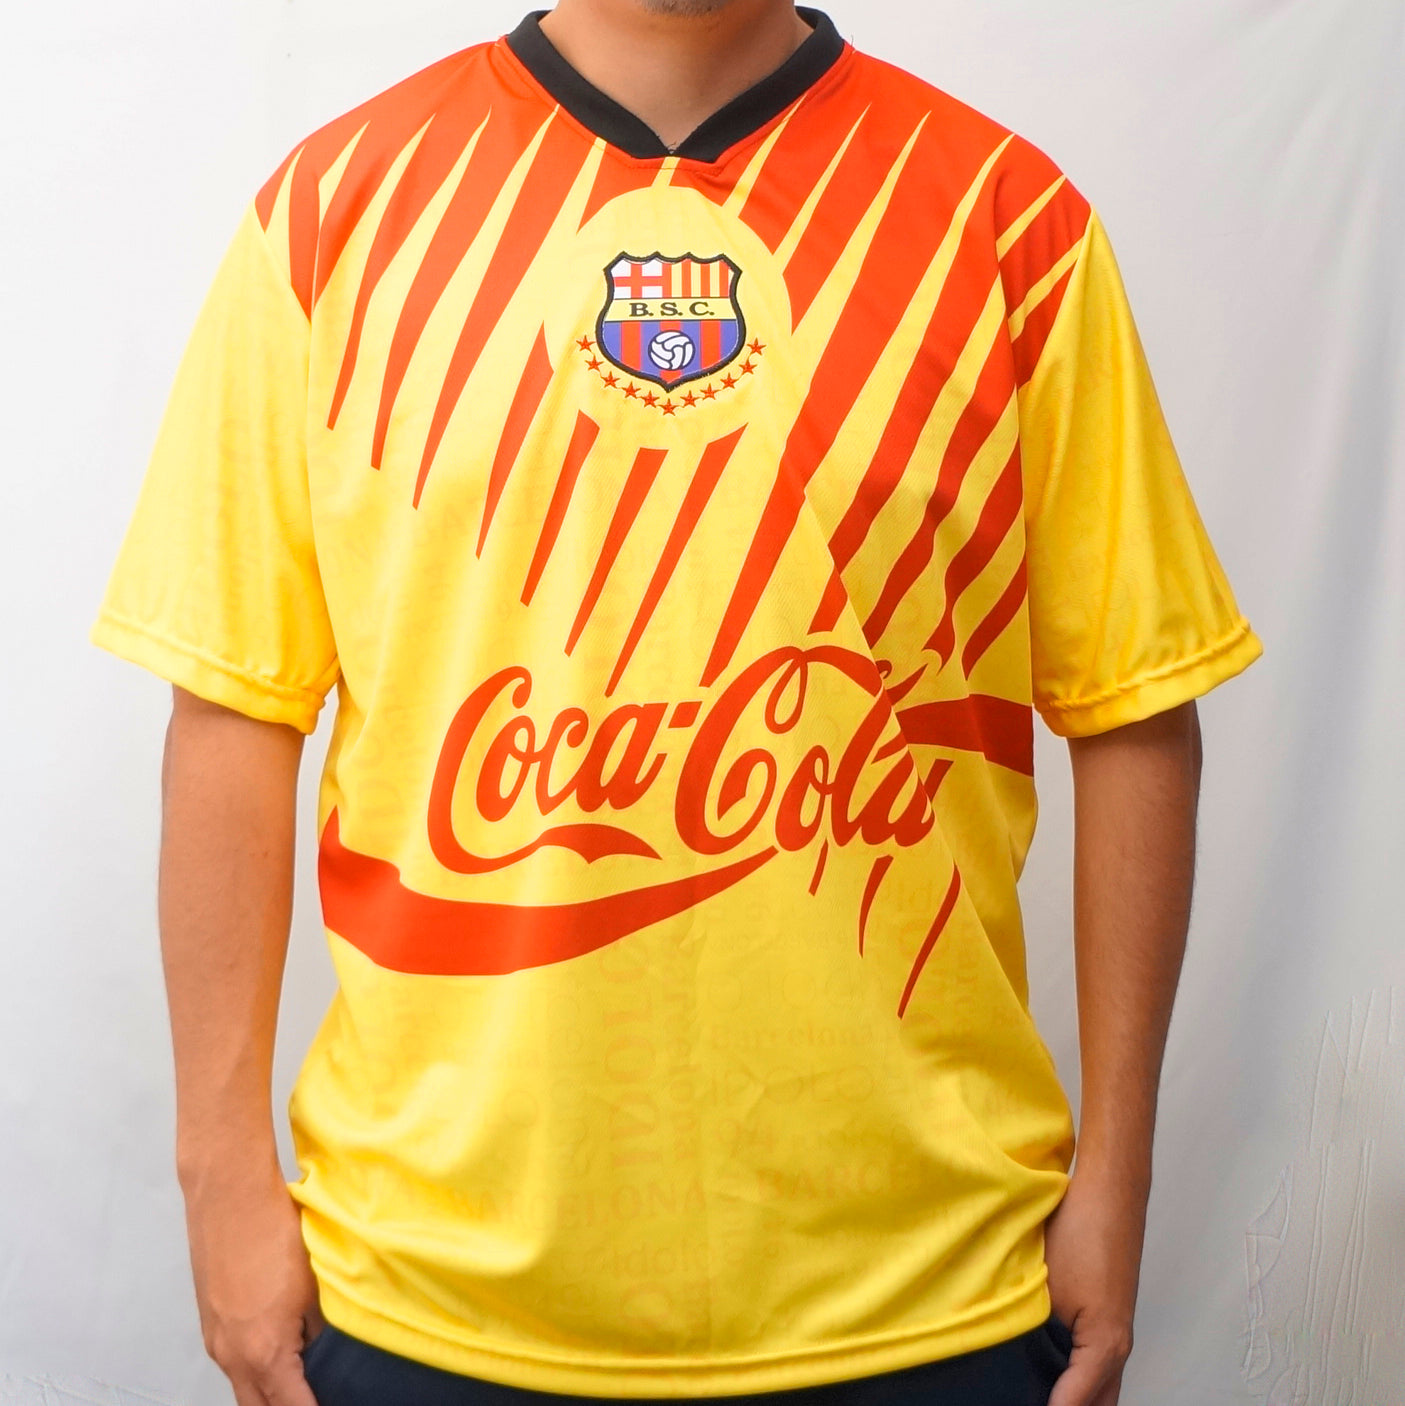 Barcelona shirt from Ecuador 1993